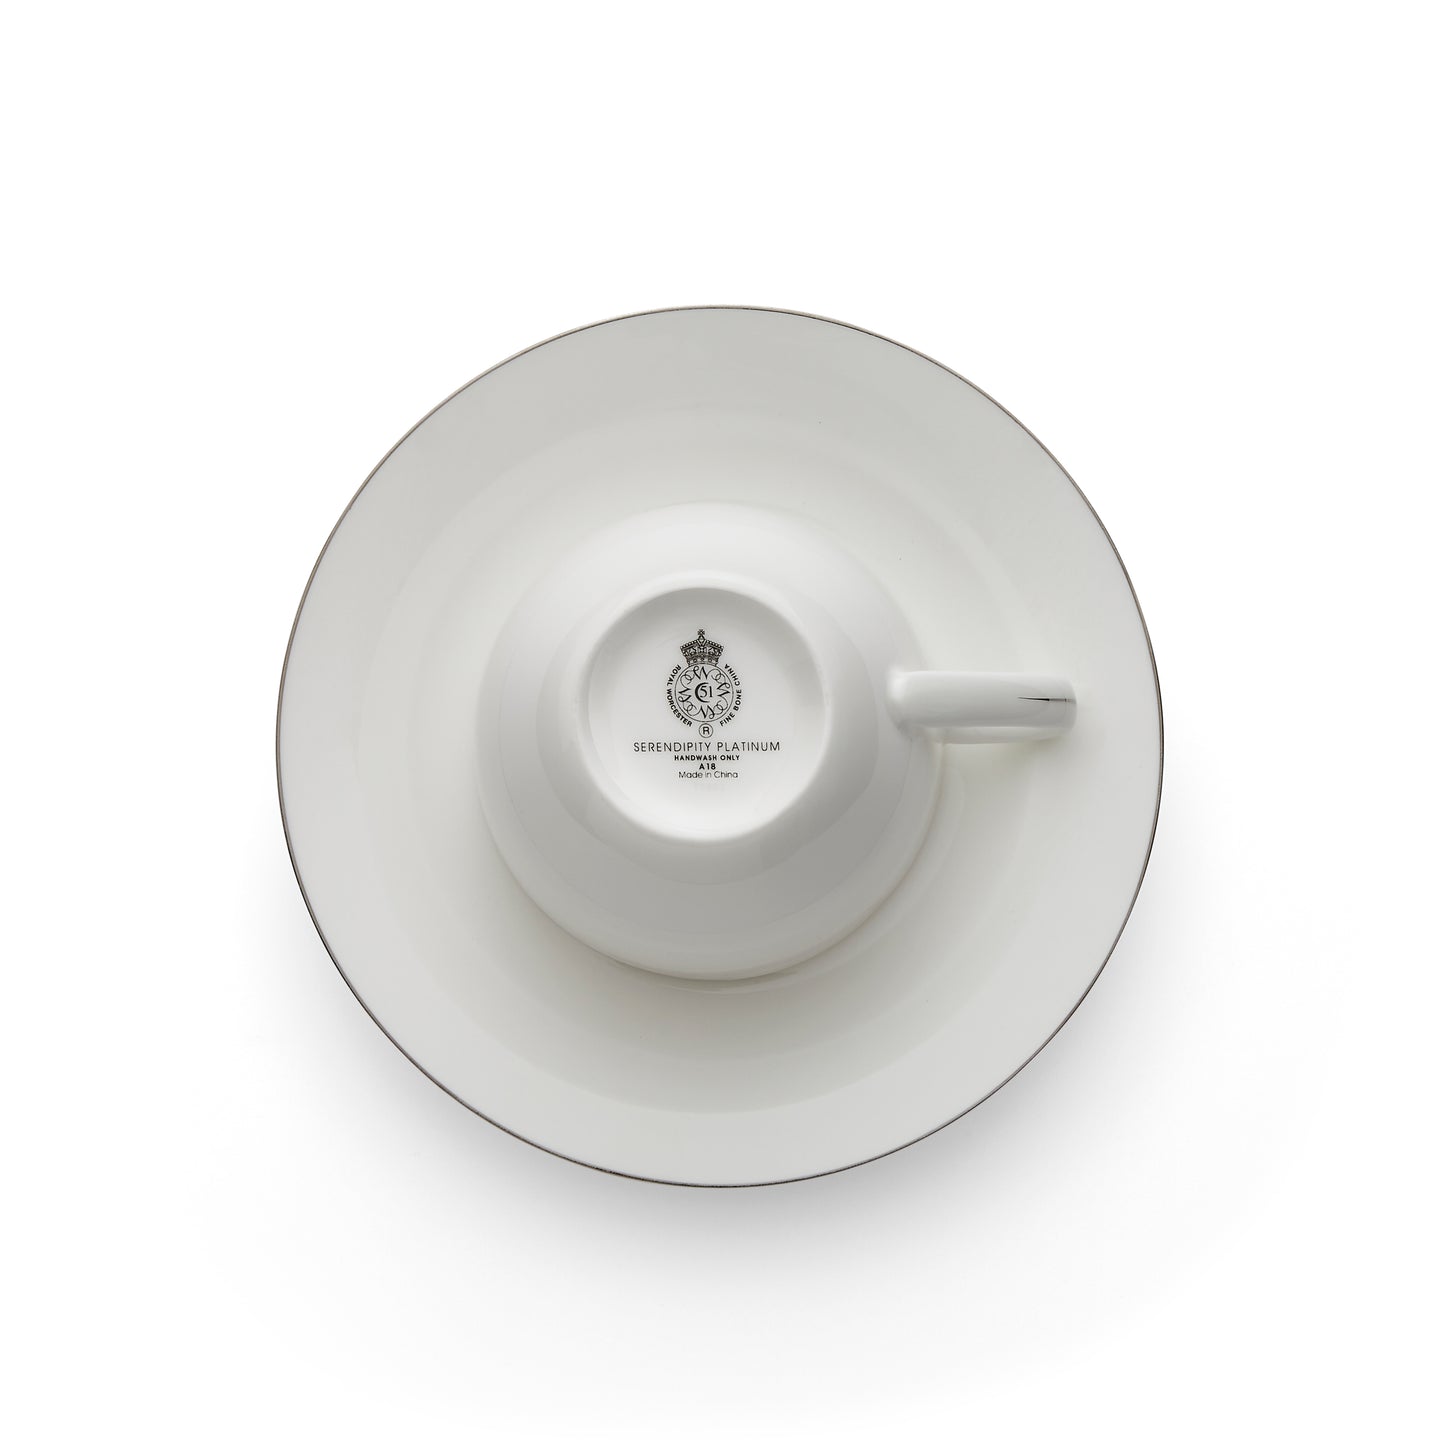 Royal Worcester Serendipity Platinum Teacup & Saucer